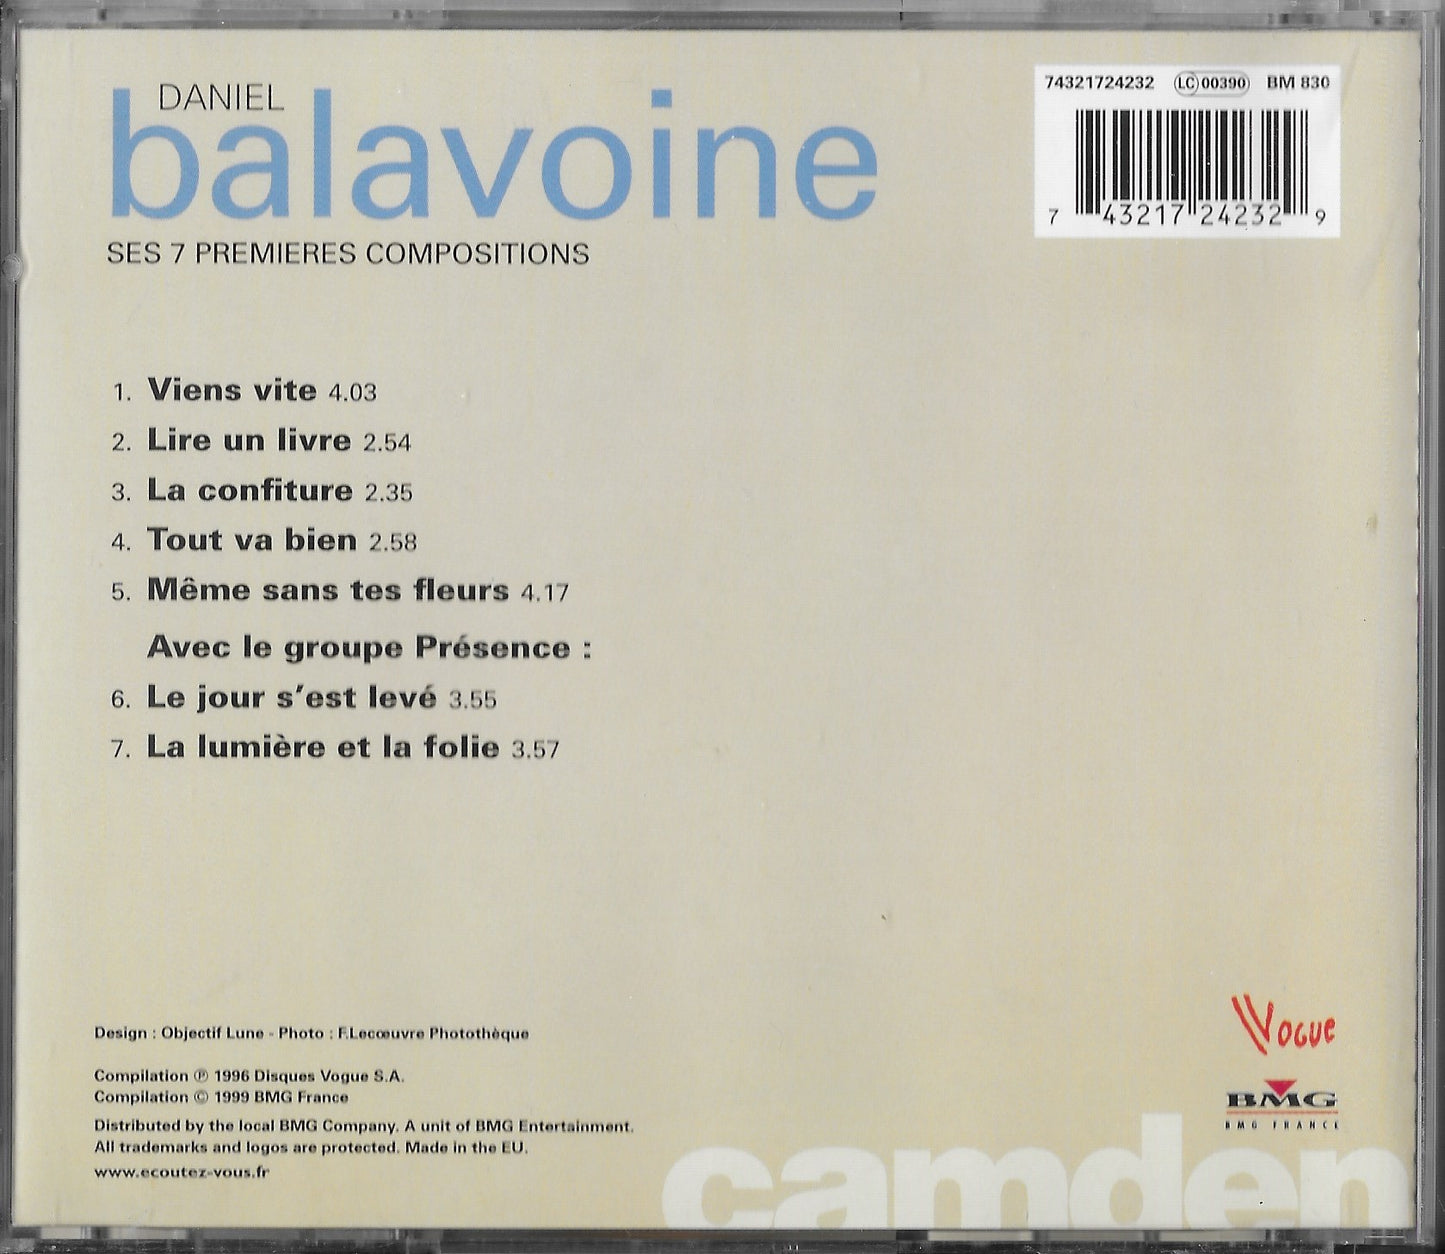 DANIEL BALAVOINE - Ses 7 Premières Compositions